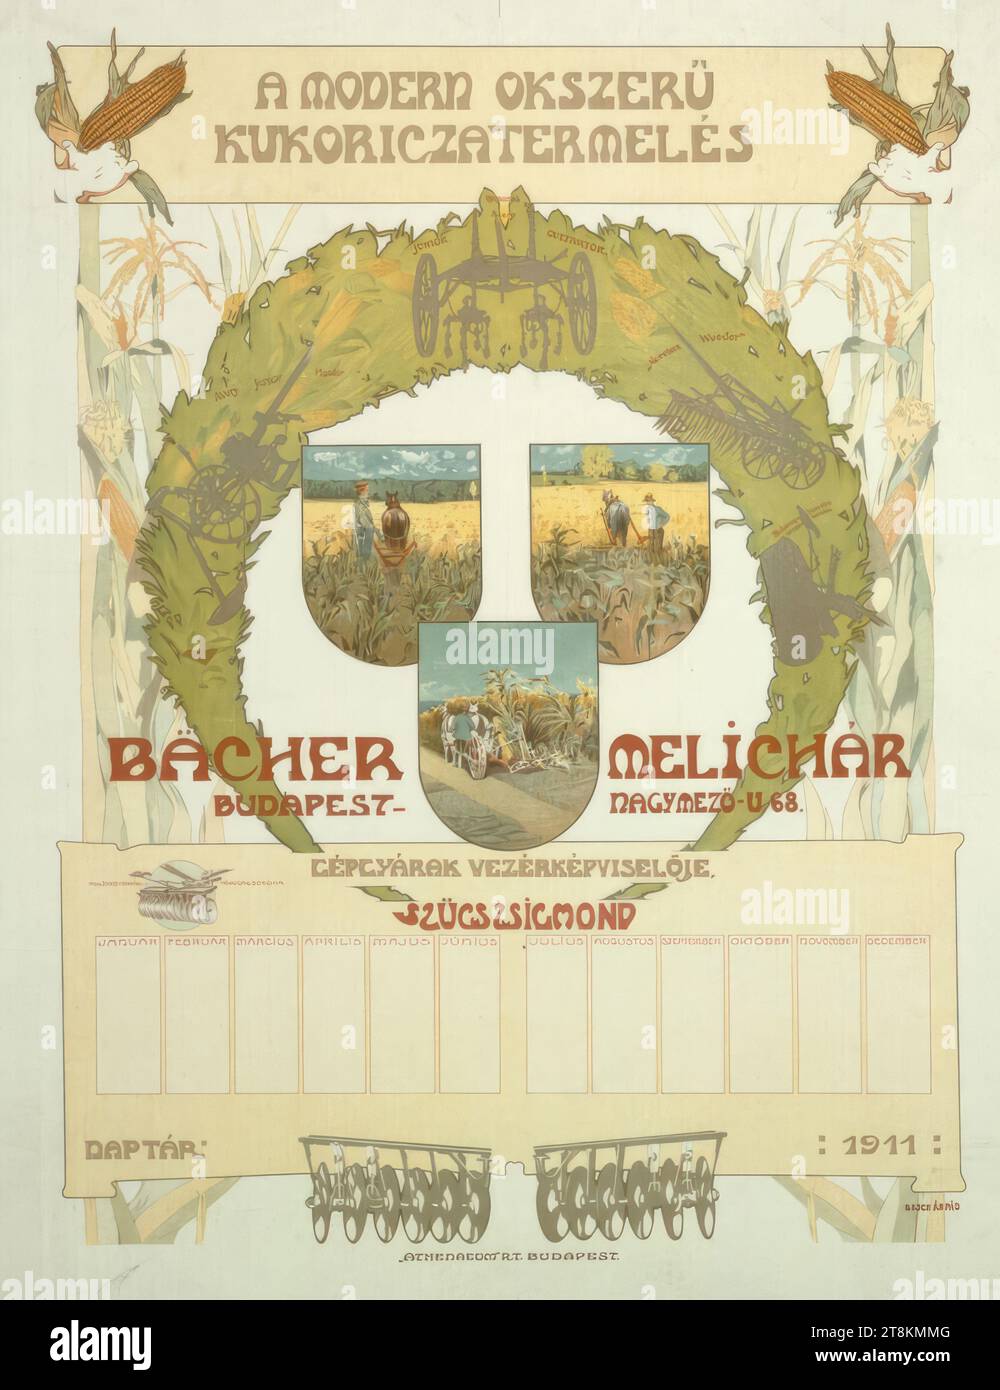 Bächer Mélichár, Budapest, Árpád Basch, Ungheria, 1873 - 1944, 1911, stampa, litografia a colori, foglio: 775 mm x 620 mm, M.O. 'A MODERN OKSZERÜ / KUKORICZATERMELÉS', in stampa, M.u. 'BÄCHER MELÍCHÁR / BUDAPEST NAGYMEZÖ.U.68 / GÉPGYÁRAK VEZÉRKÉPVISELÖJE. / SZÜCS ZSIGMOND', in stampa, l.u. 'NAPTÁR', in stampa, r.u. '1911 / BASCH Árpád', in stampa, M.u. ''ATHENAEUM'' R.T. BUDAPEST.', in stampa Foto Stock